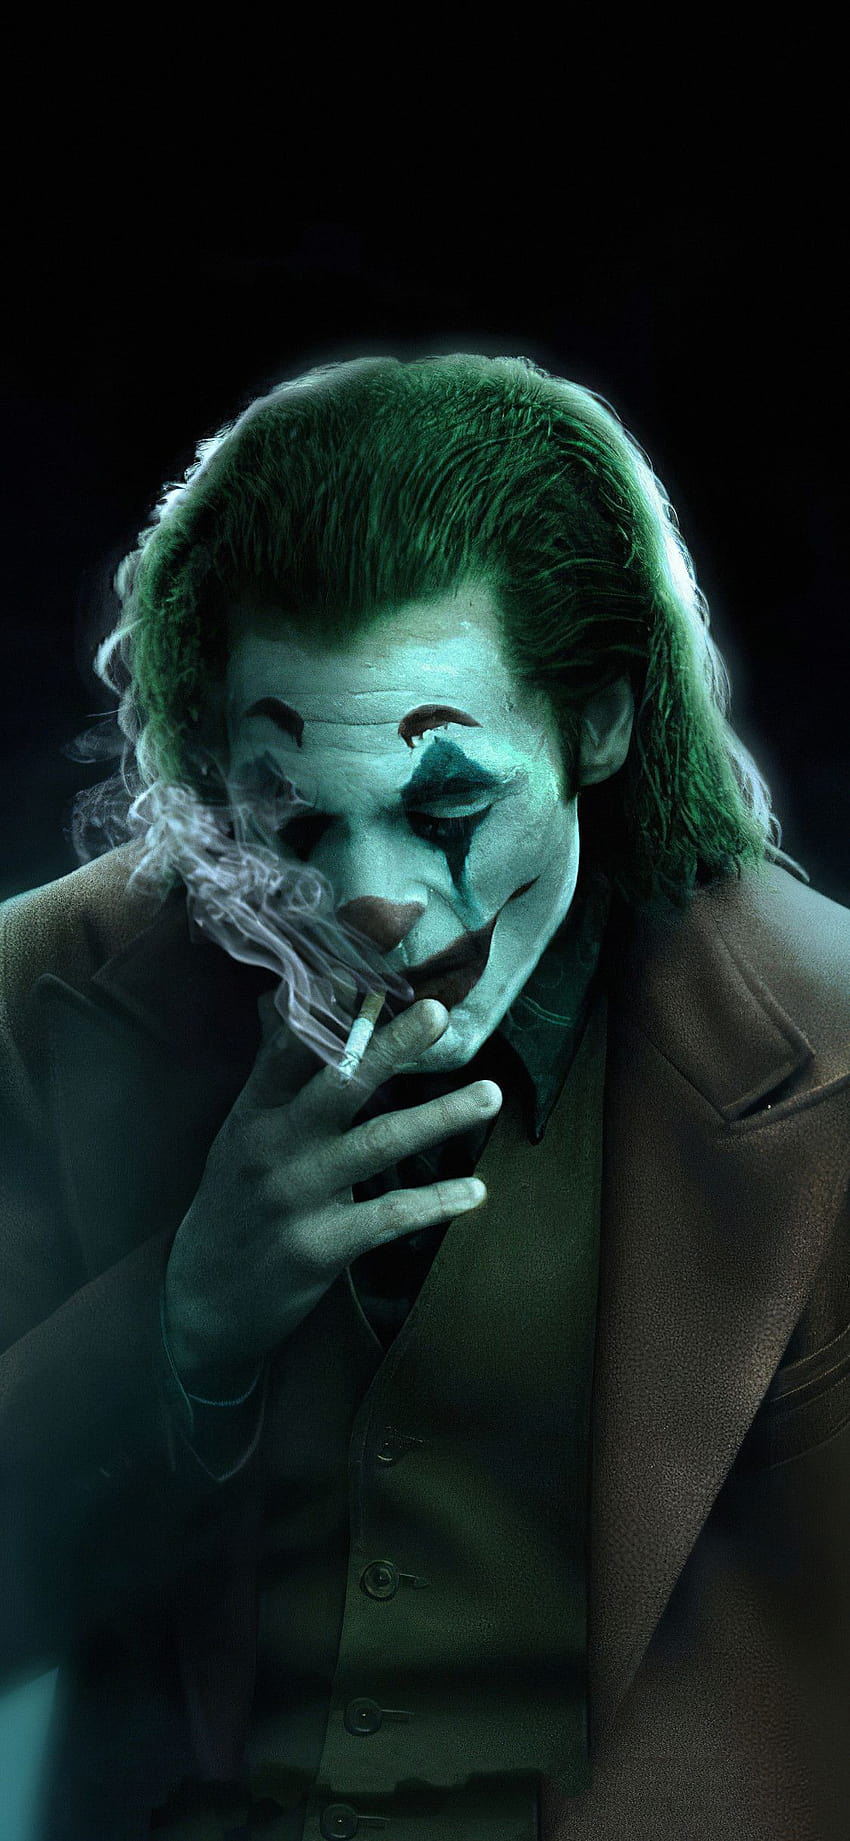 Iphone Of Joker, joker motivational iphone HD phone wallpaper | Pxfuel